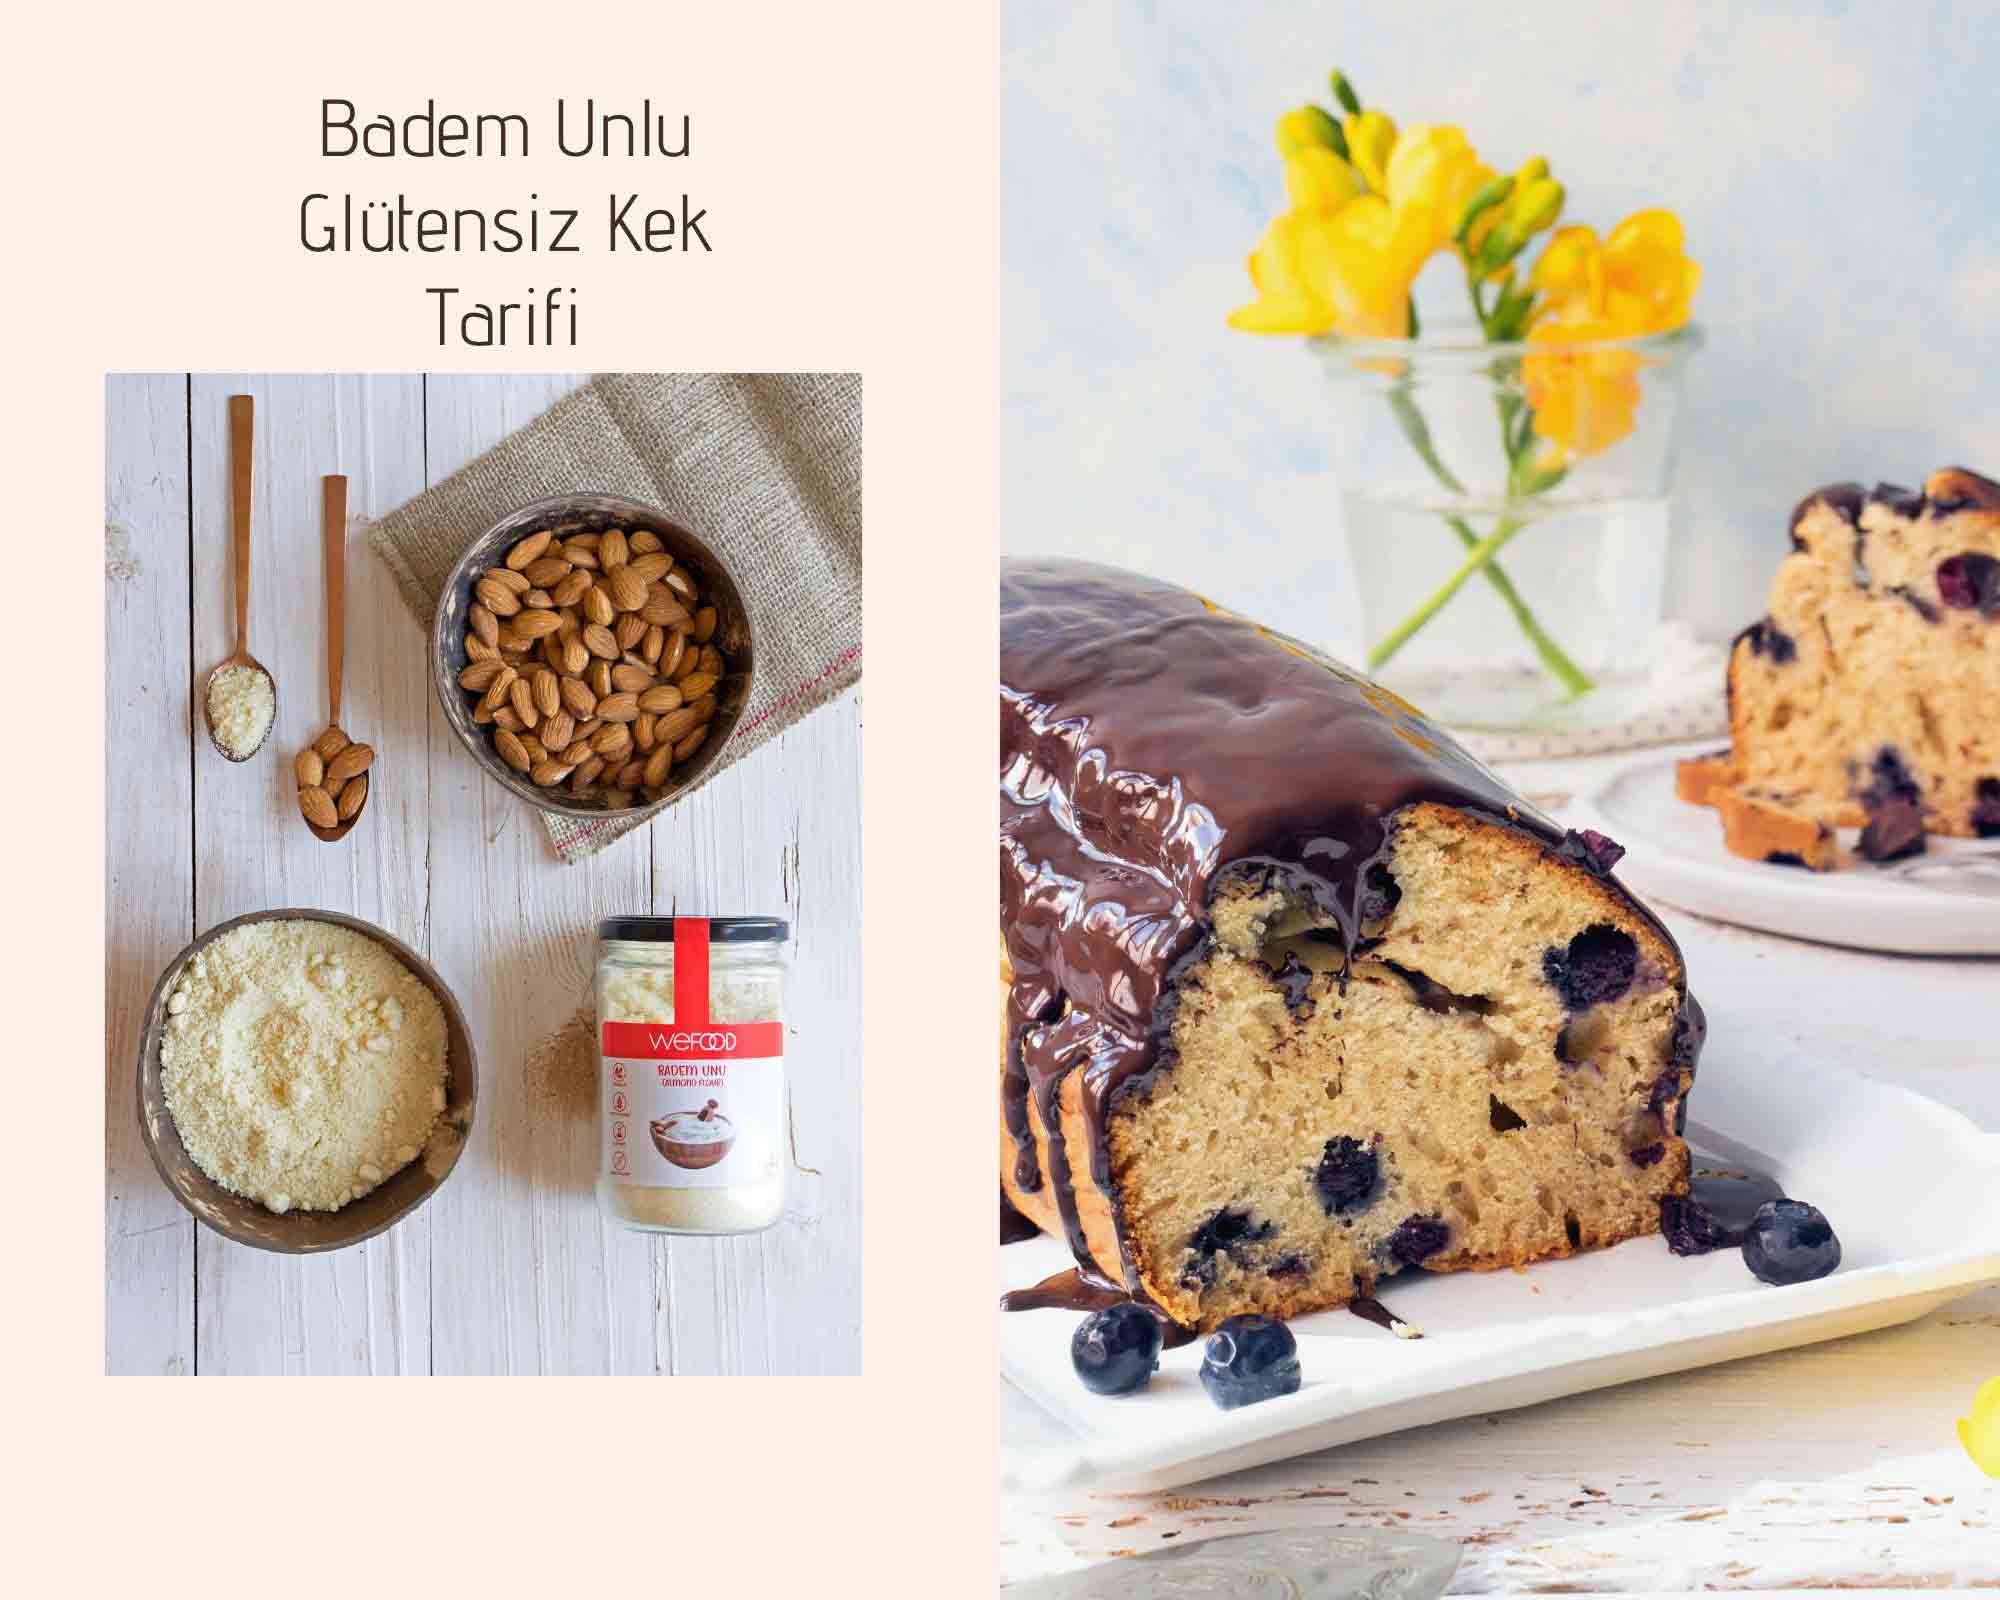 Badem Unlu Kek Tarifi, Badem Unlu Glutensiz Kek Nasıl Yapılır?